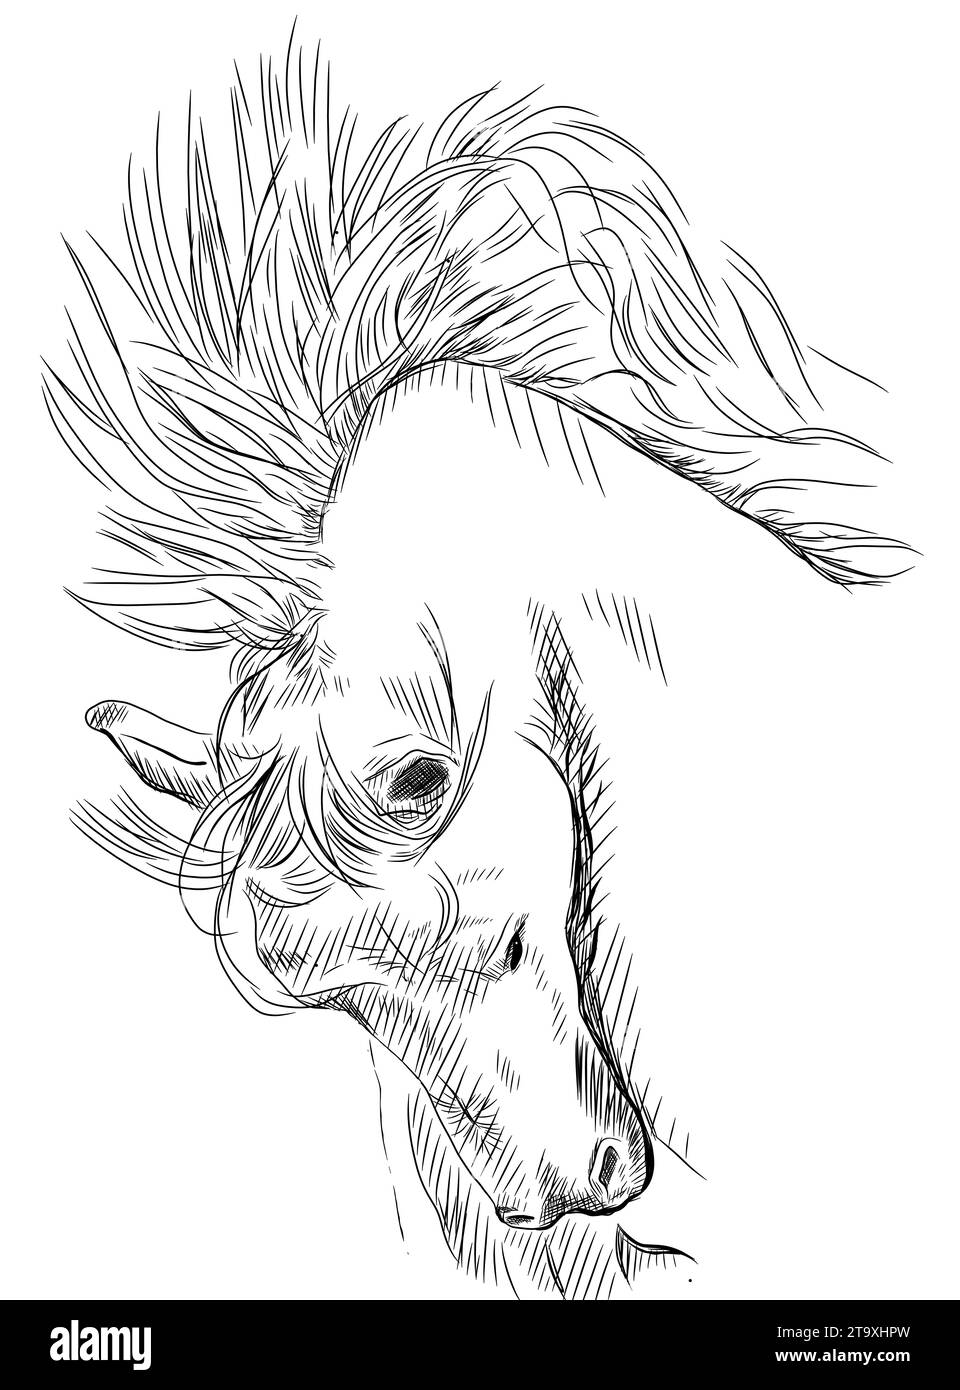 Belle et élégante illustration de ligne de tête de cheval Banque D'Images